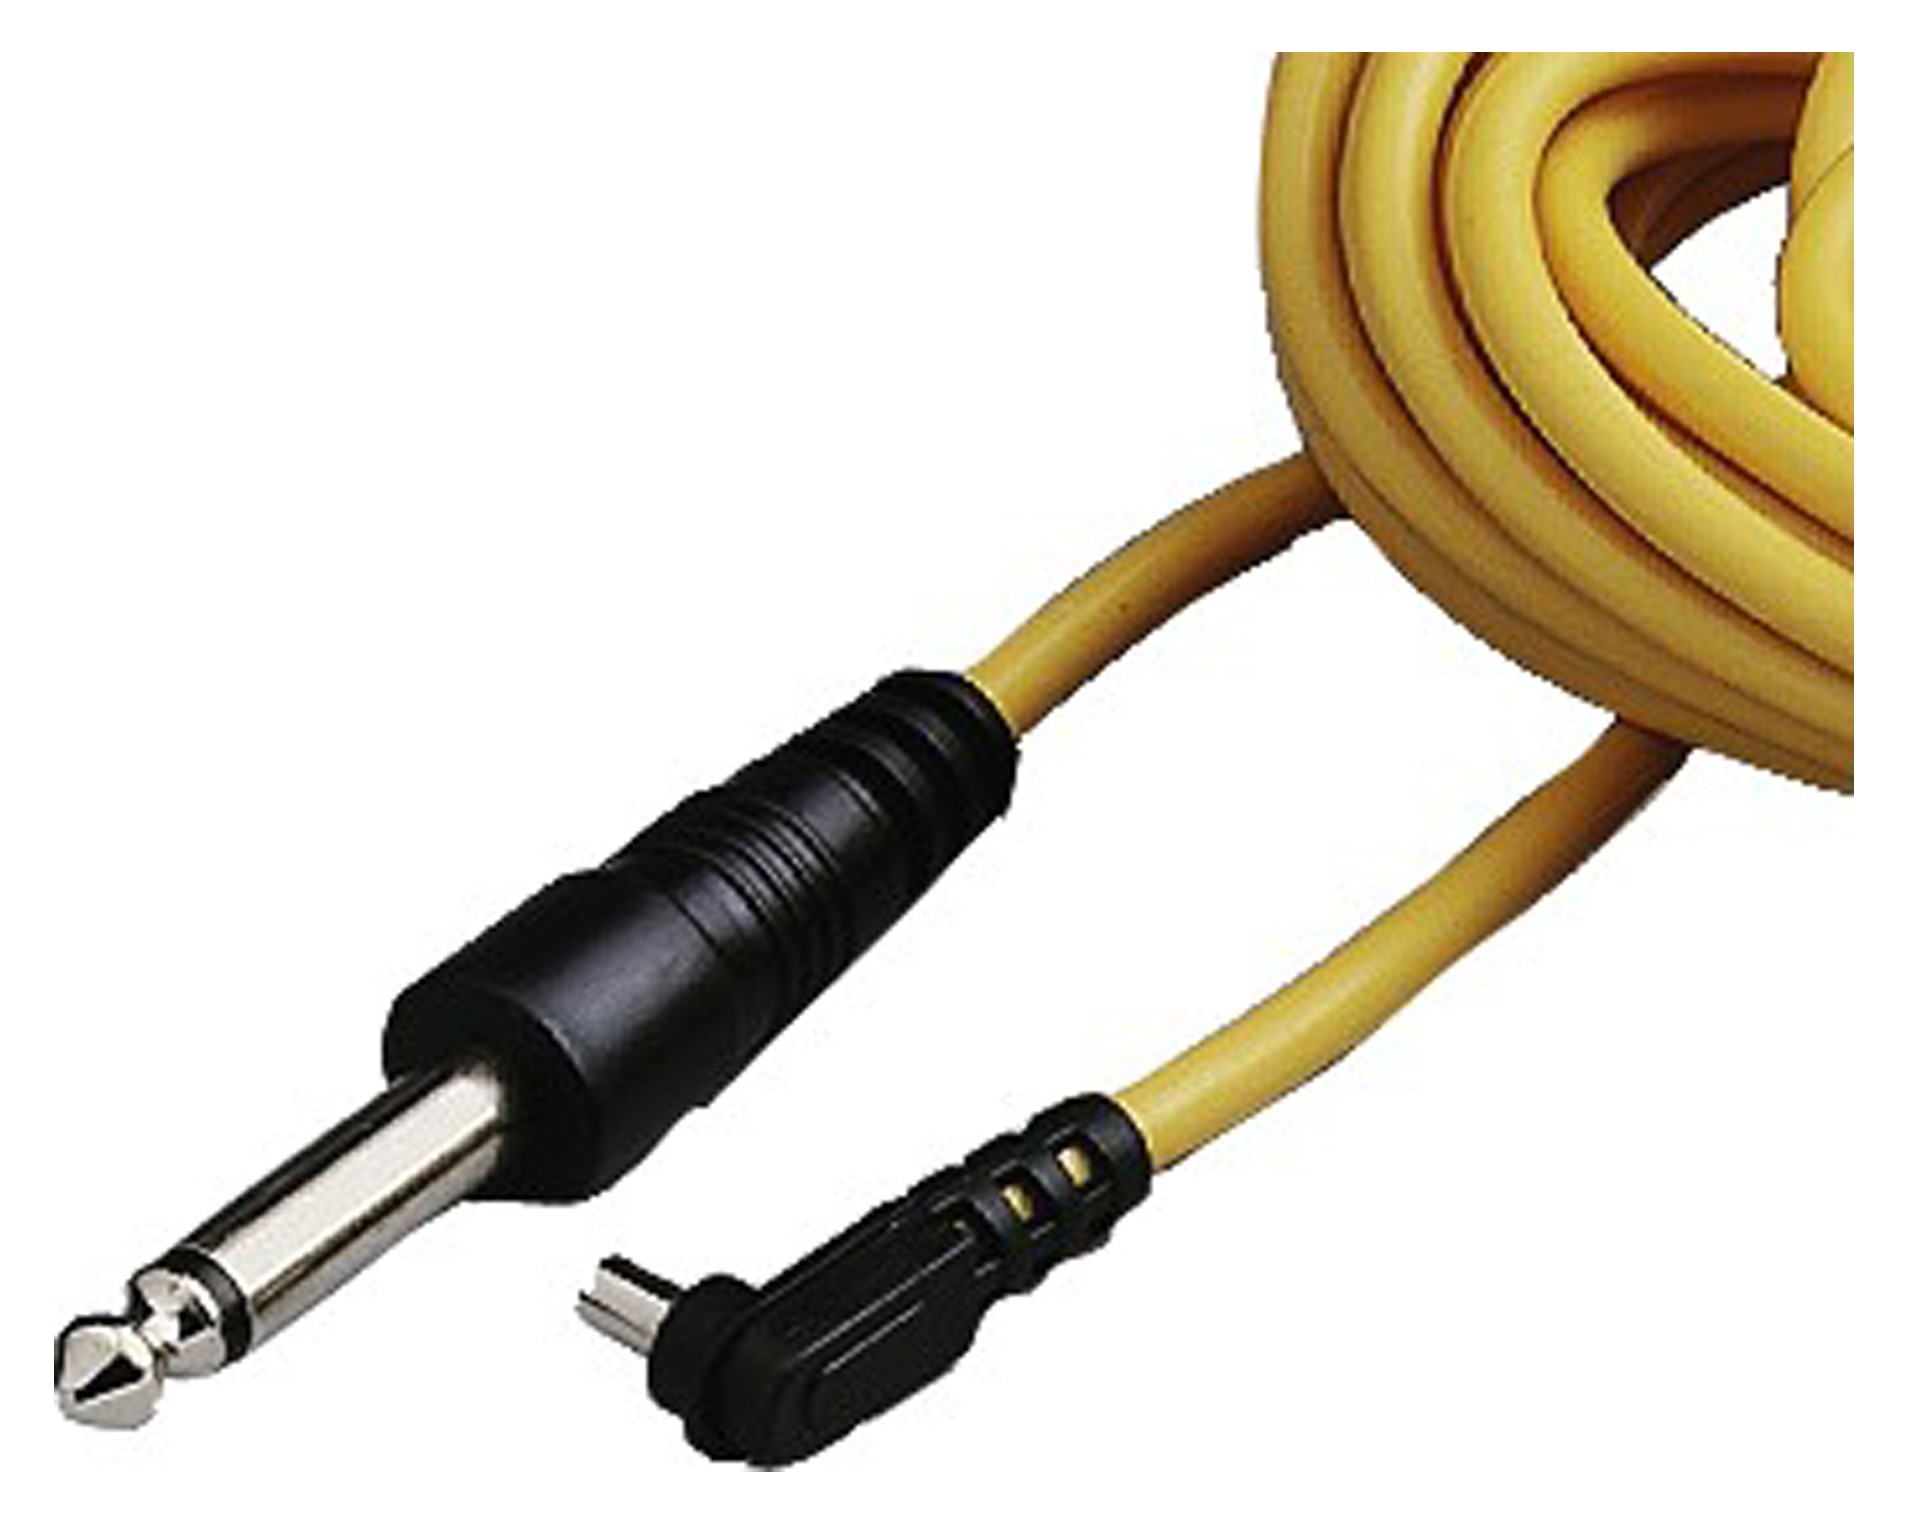 Flash кабель. Провода Jack желтые. Желтый электрический шнур. Кабель синхронизации для студийной вспышки. Пятипиновый кабель синхронизации со вспышкой.